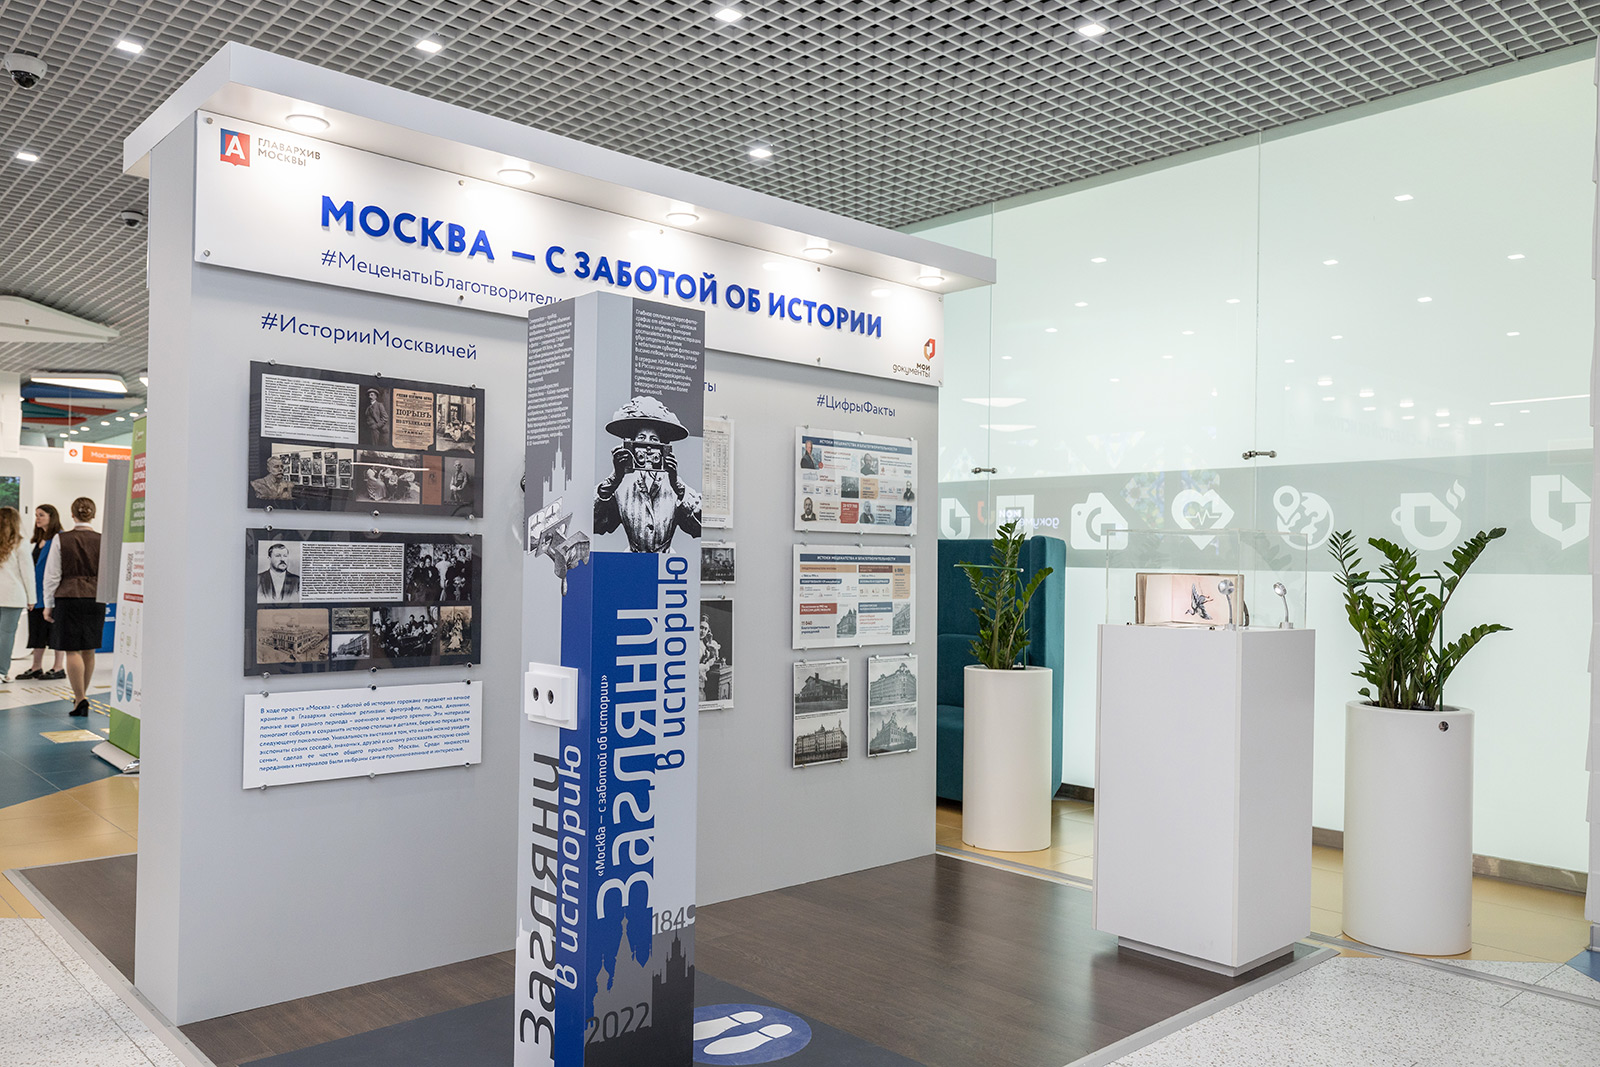 Стереоскопы установили на всех выставках проекта «Москва — с заботой об истории» в ТиНАО